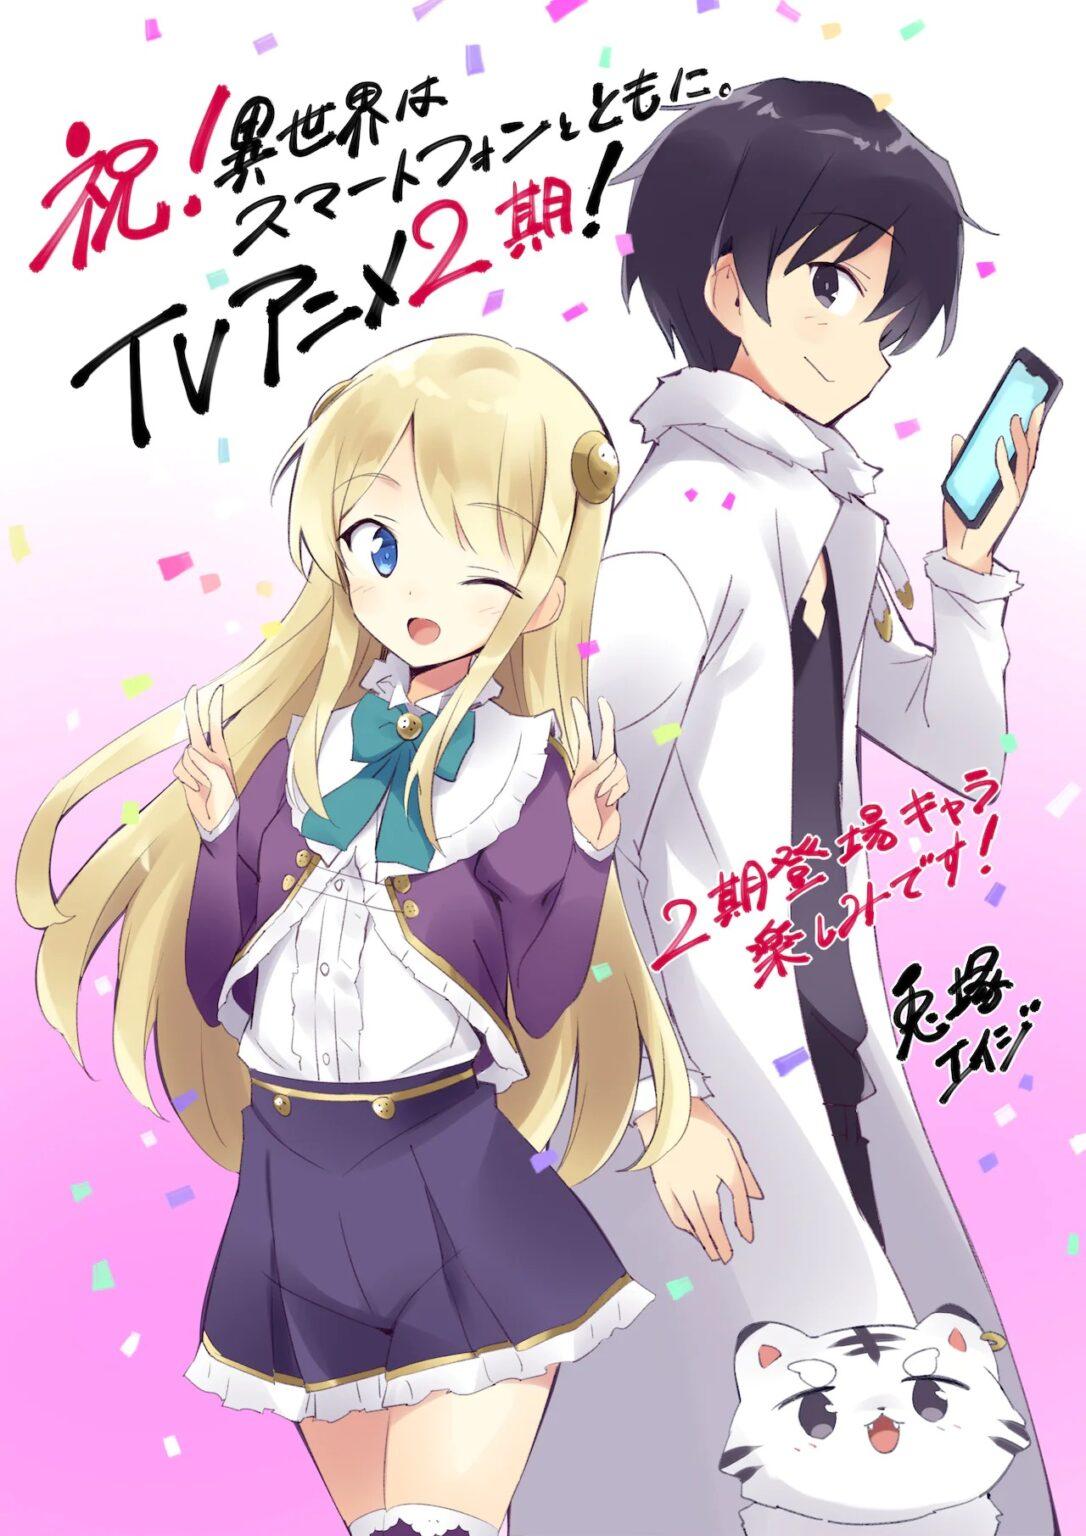 Anime Isekai wa Smartphone to Tomo ni ganhará 2 temporada – Tomodachi Nerd's